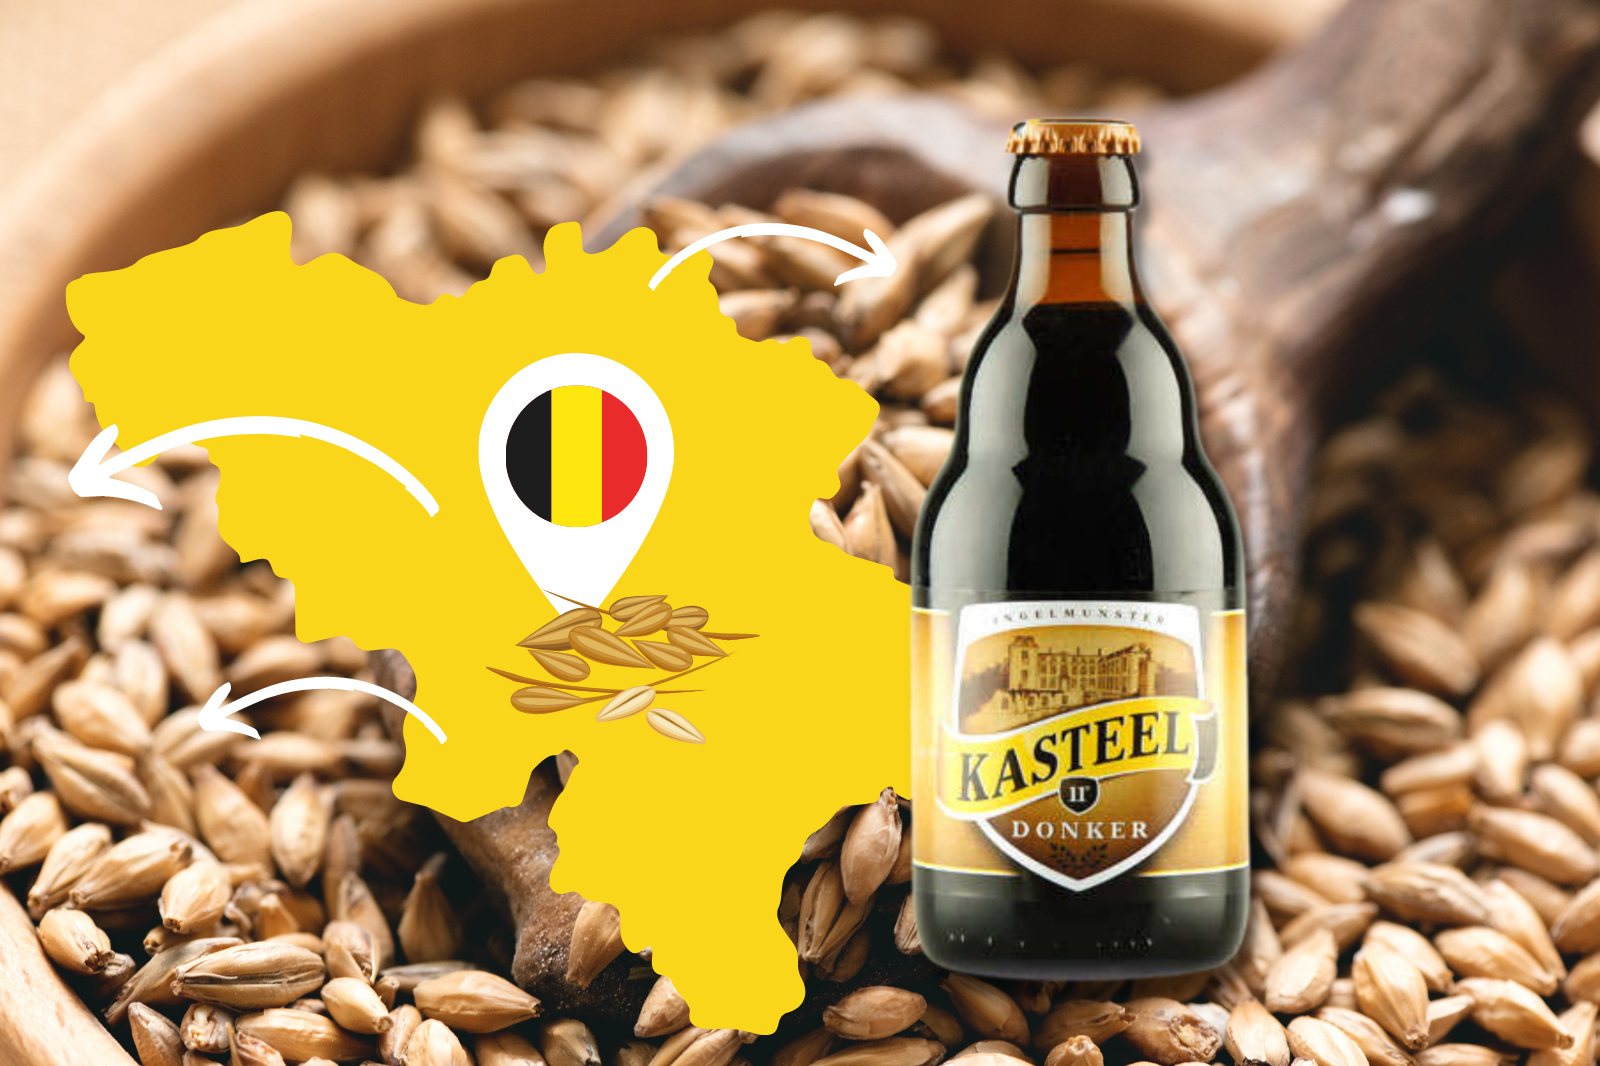 Achats et dégustation de bières belges - La Minute Blonde